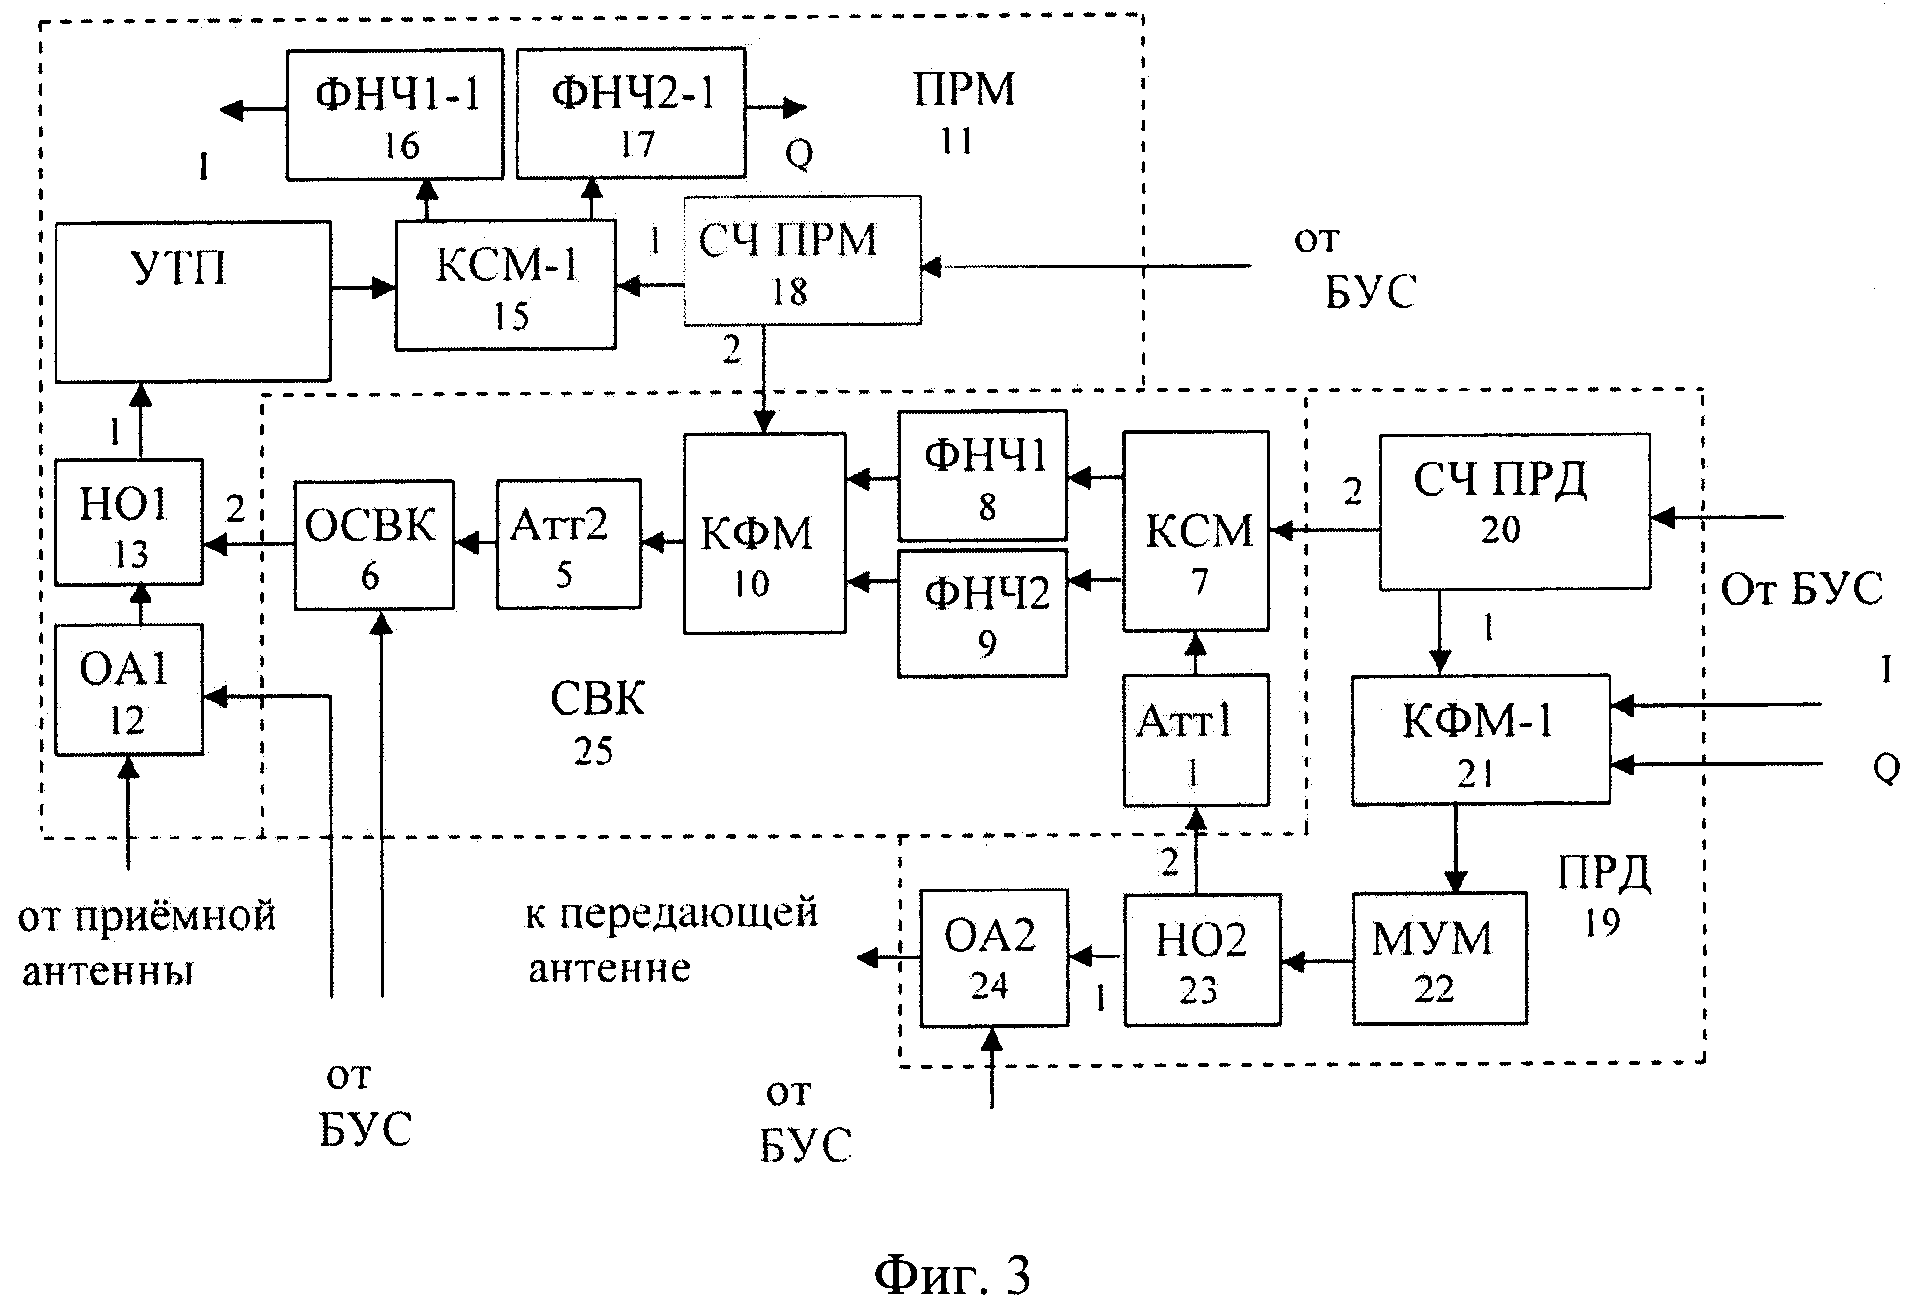 Система встроенного контроля бортового ретранслятора